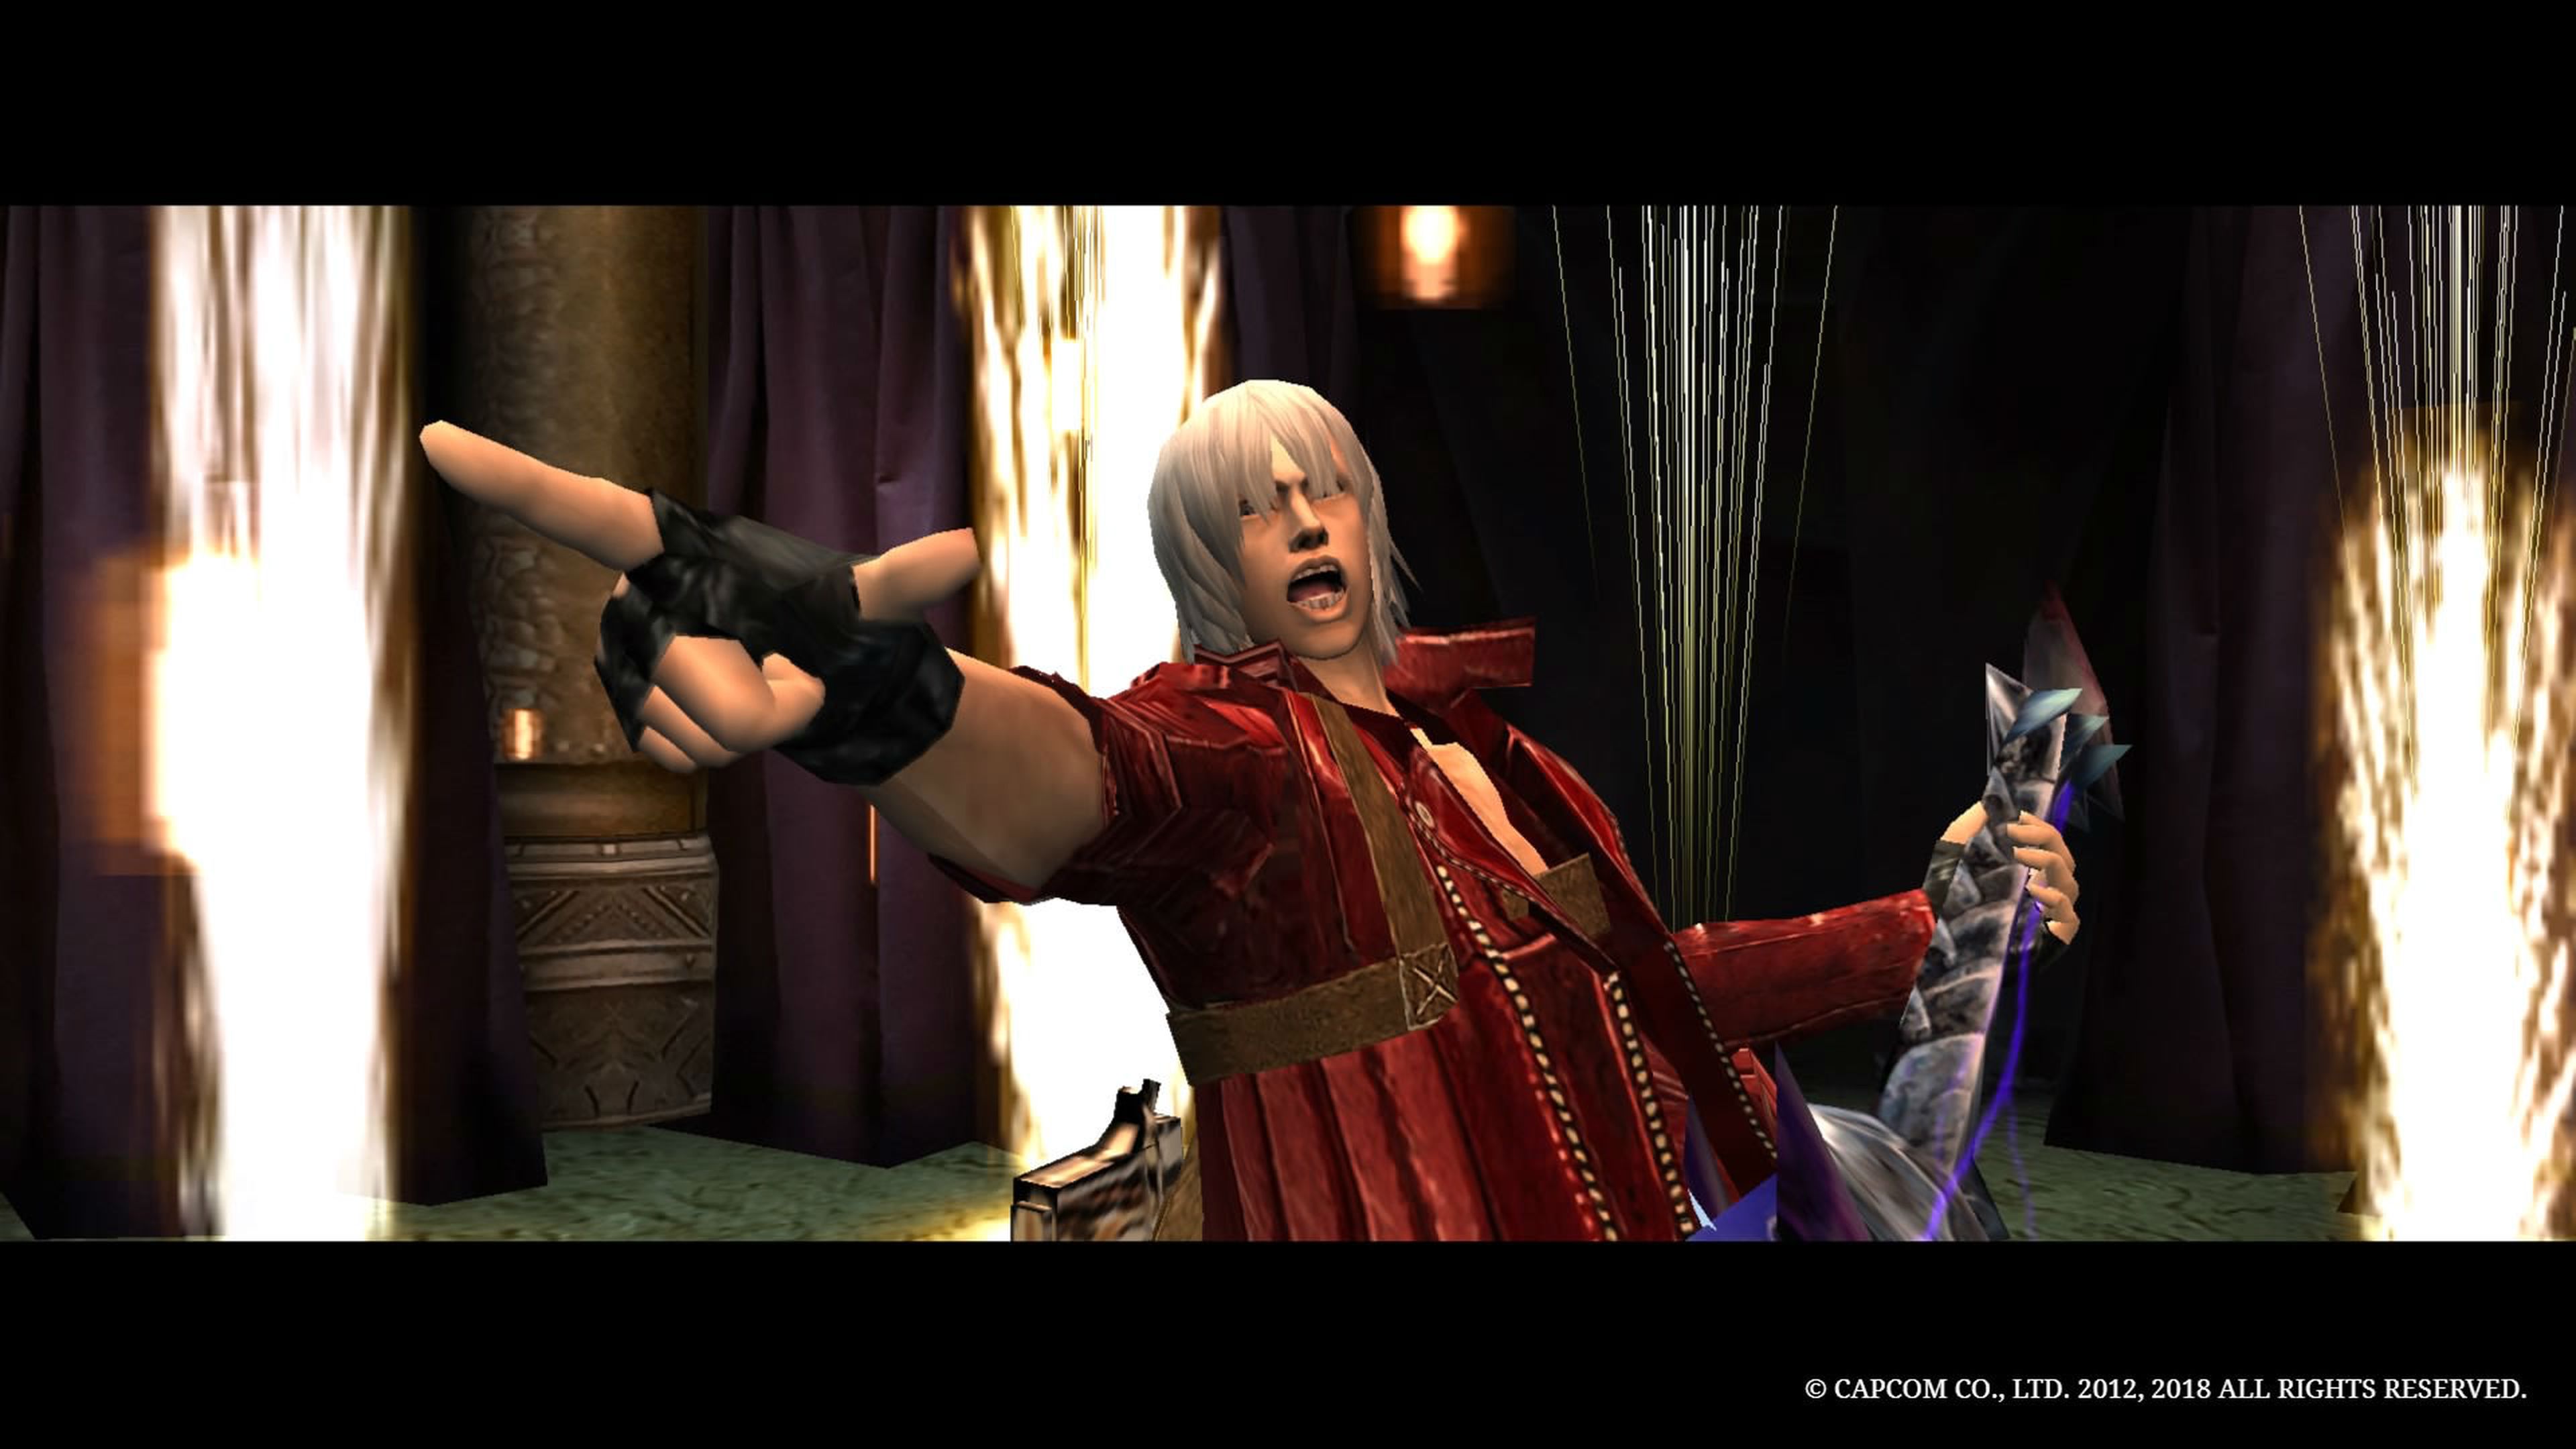 En DMC 3, Dante puede usar una guitarra eléctrica como arma. UNA MALDITA GUITARRA ELÉCTRICA.